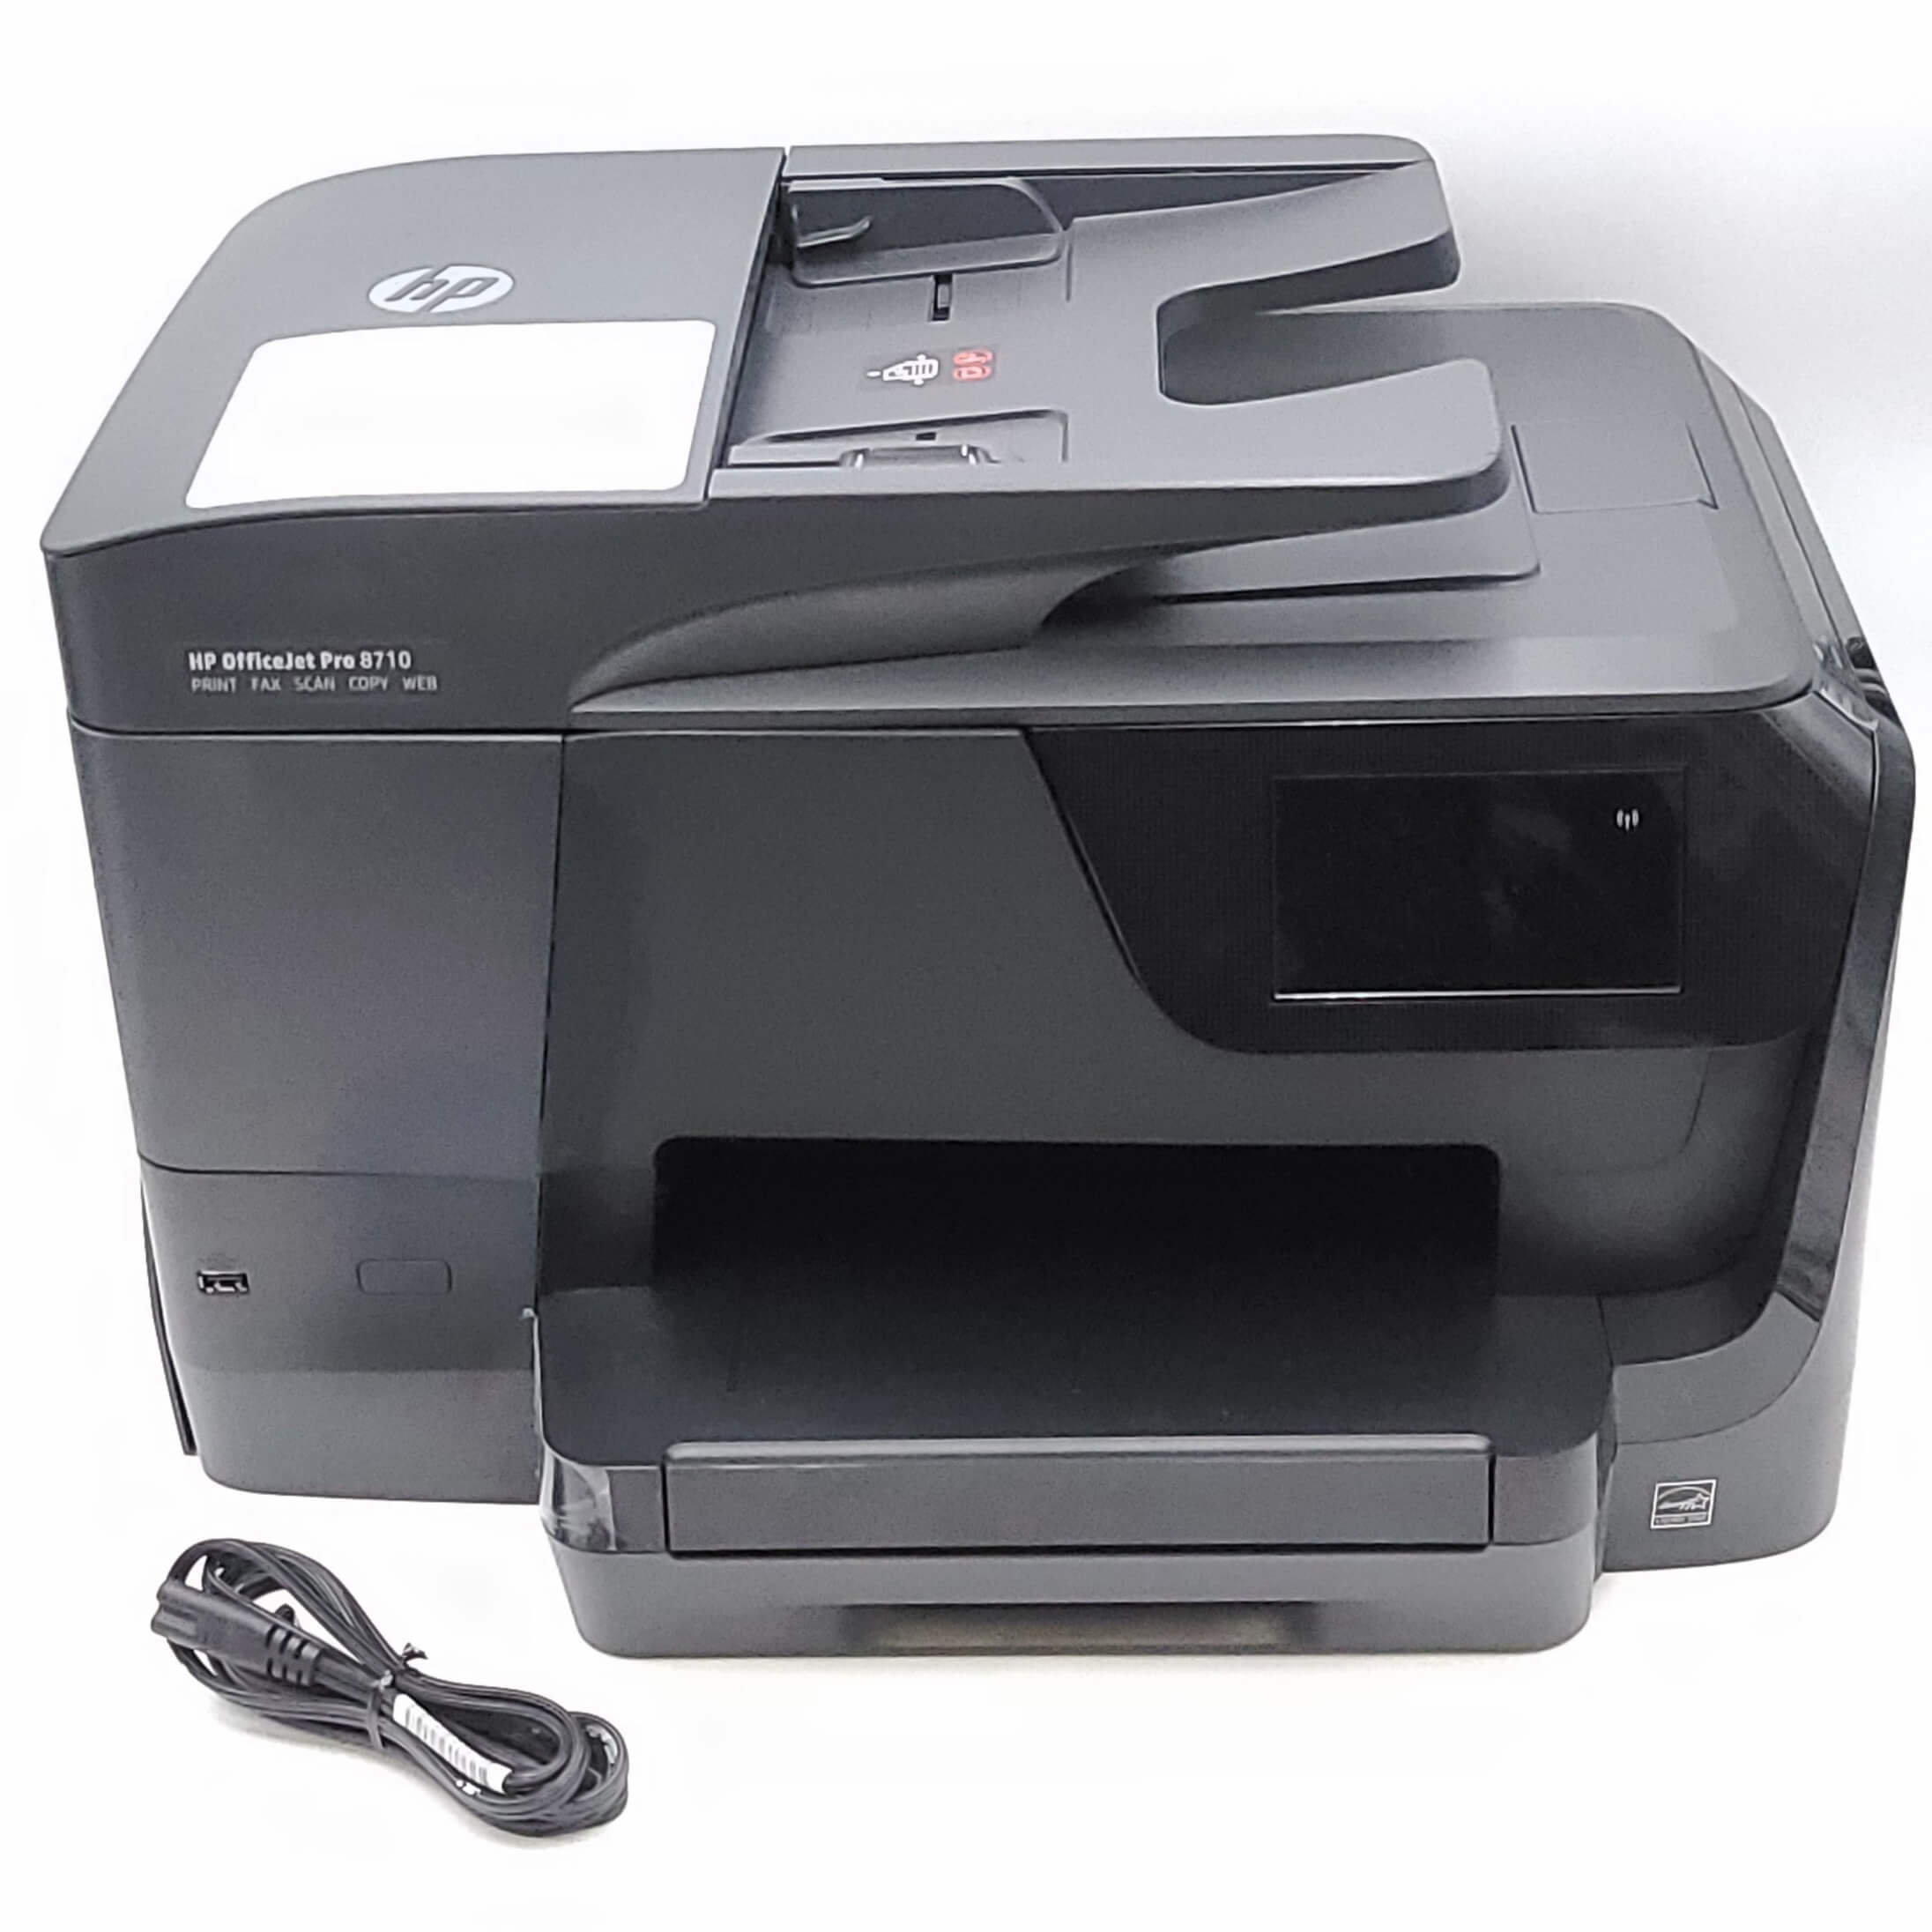 Hp Deskjet 7720 Driver Download - Ø¨Ø§ÙØ¬ÙÙÙ ØªØ¬ÙÙÙ Ø§Ø°ÙØ¨ ÙÙØ£Ø¹ÙÙ ØªØ¹Ø±ÙÙ Ø·Ø§Ø¨Ø¹Ø© Hp Officejet Pro 7720 Balestron Com / The printer, hp officejet pro 7720 wide format printer model, has a product number of y0s18a.